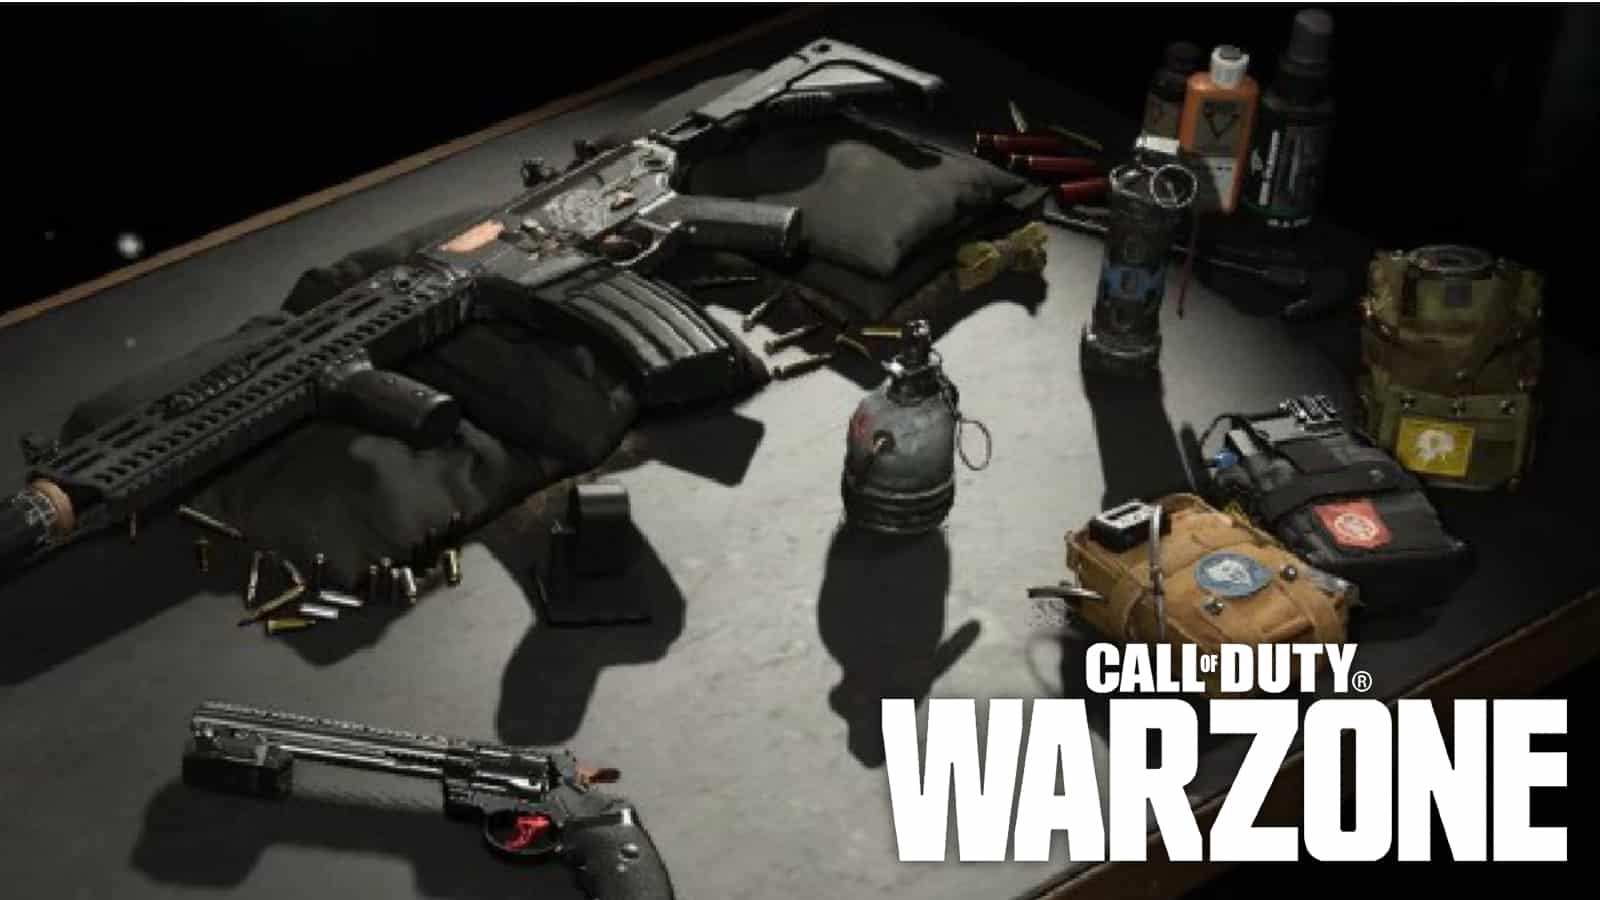 Como utilizar o Gunsmith em Call of Duty Mobile